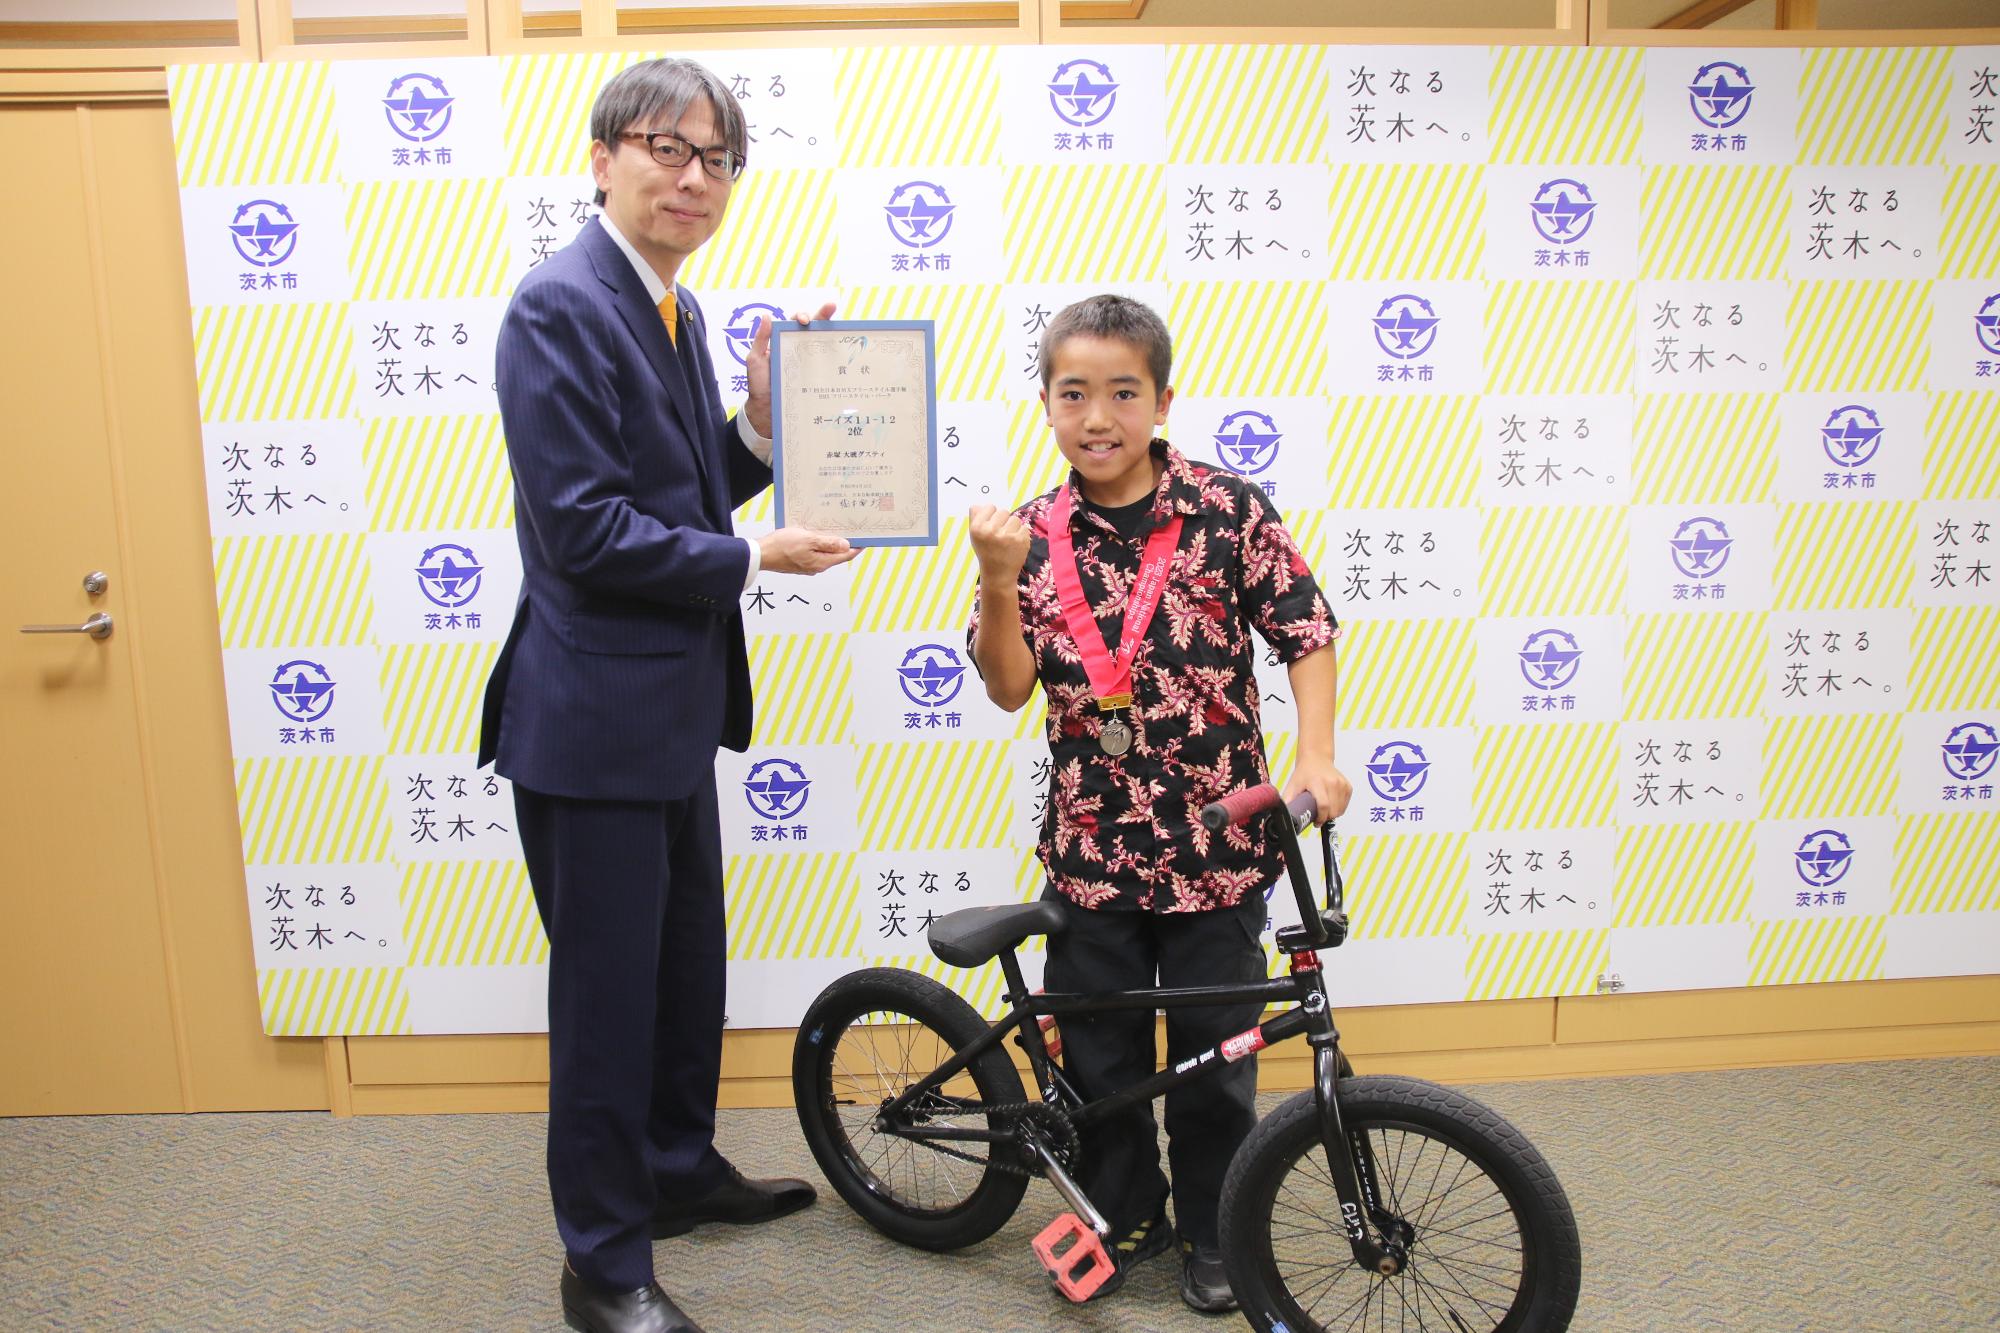 赤塚大晄グスティさんと市長の写真